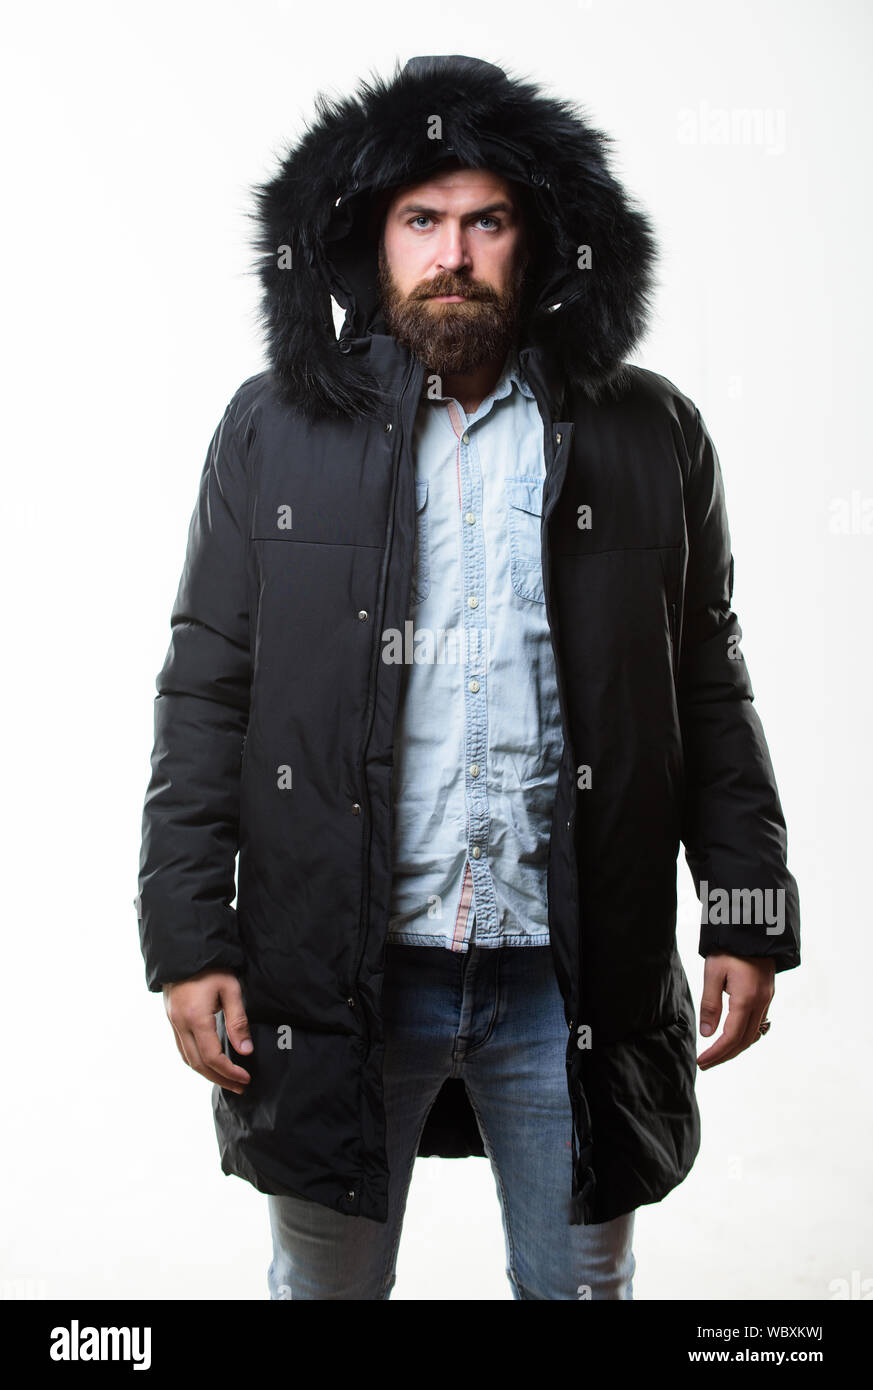 Hipster fashion de Guy se visten de chaqueta de invierno con capucha. Preparados para los cambios Elegante ropa de invierno. El hombre barbado stand chaqueta parka aislado sobre fondo